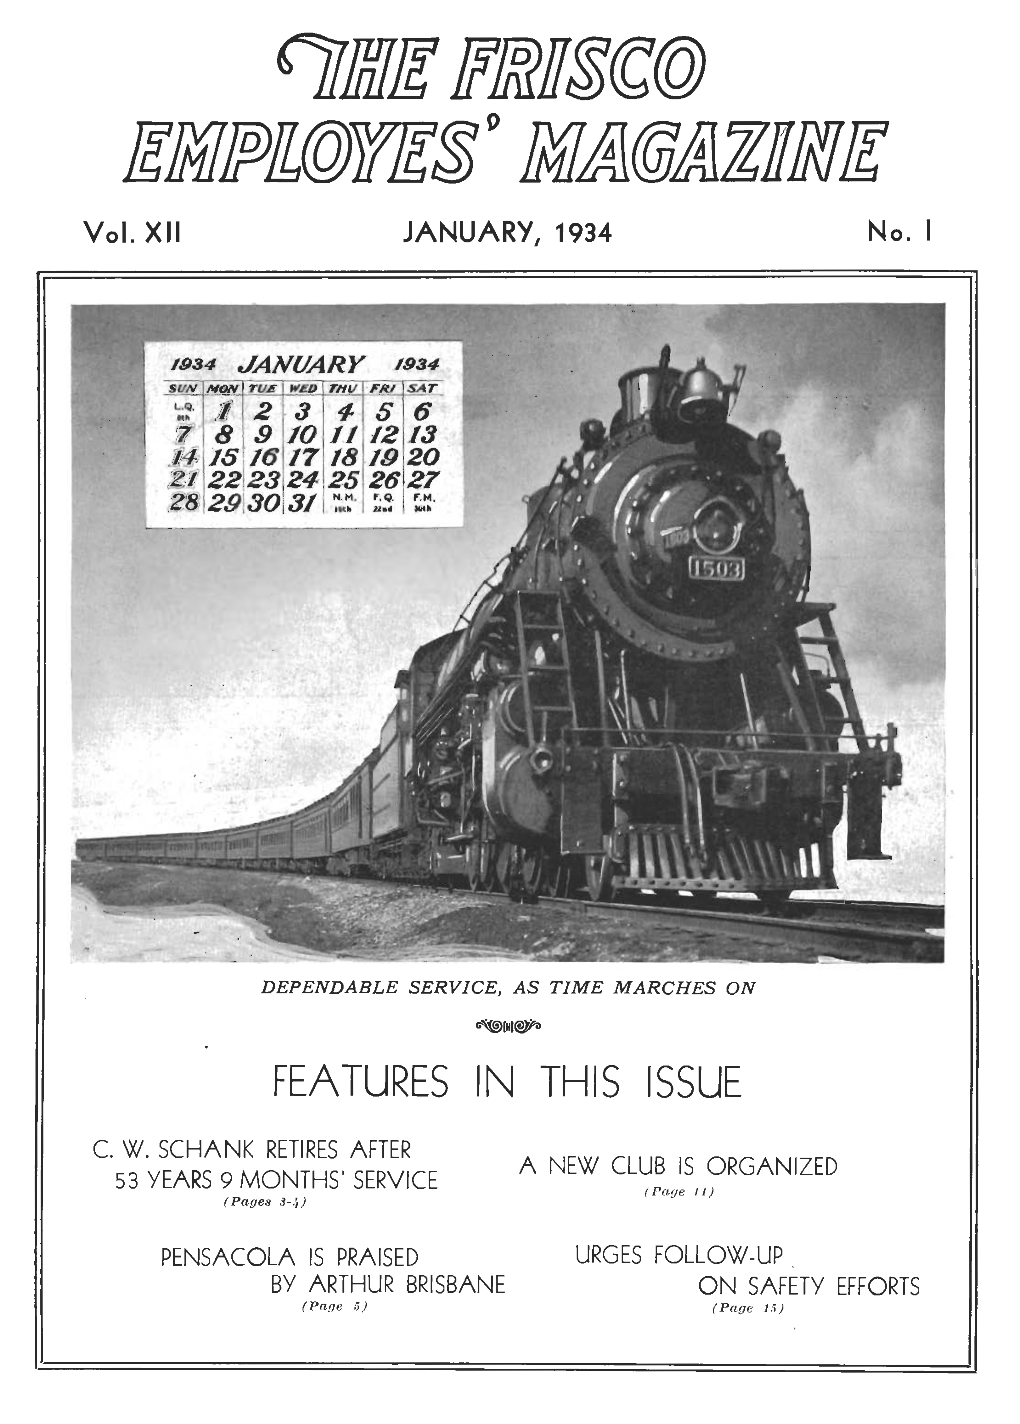 The Frisco Employes' Magazine, January 1934